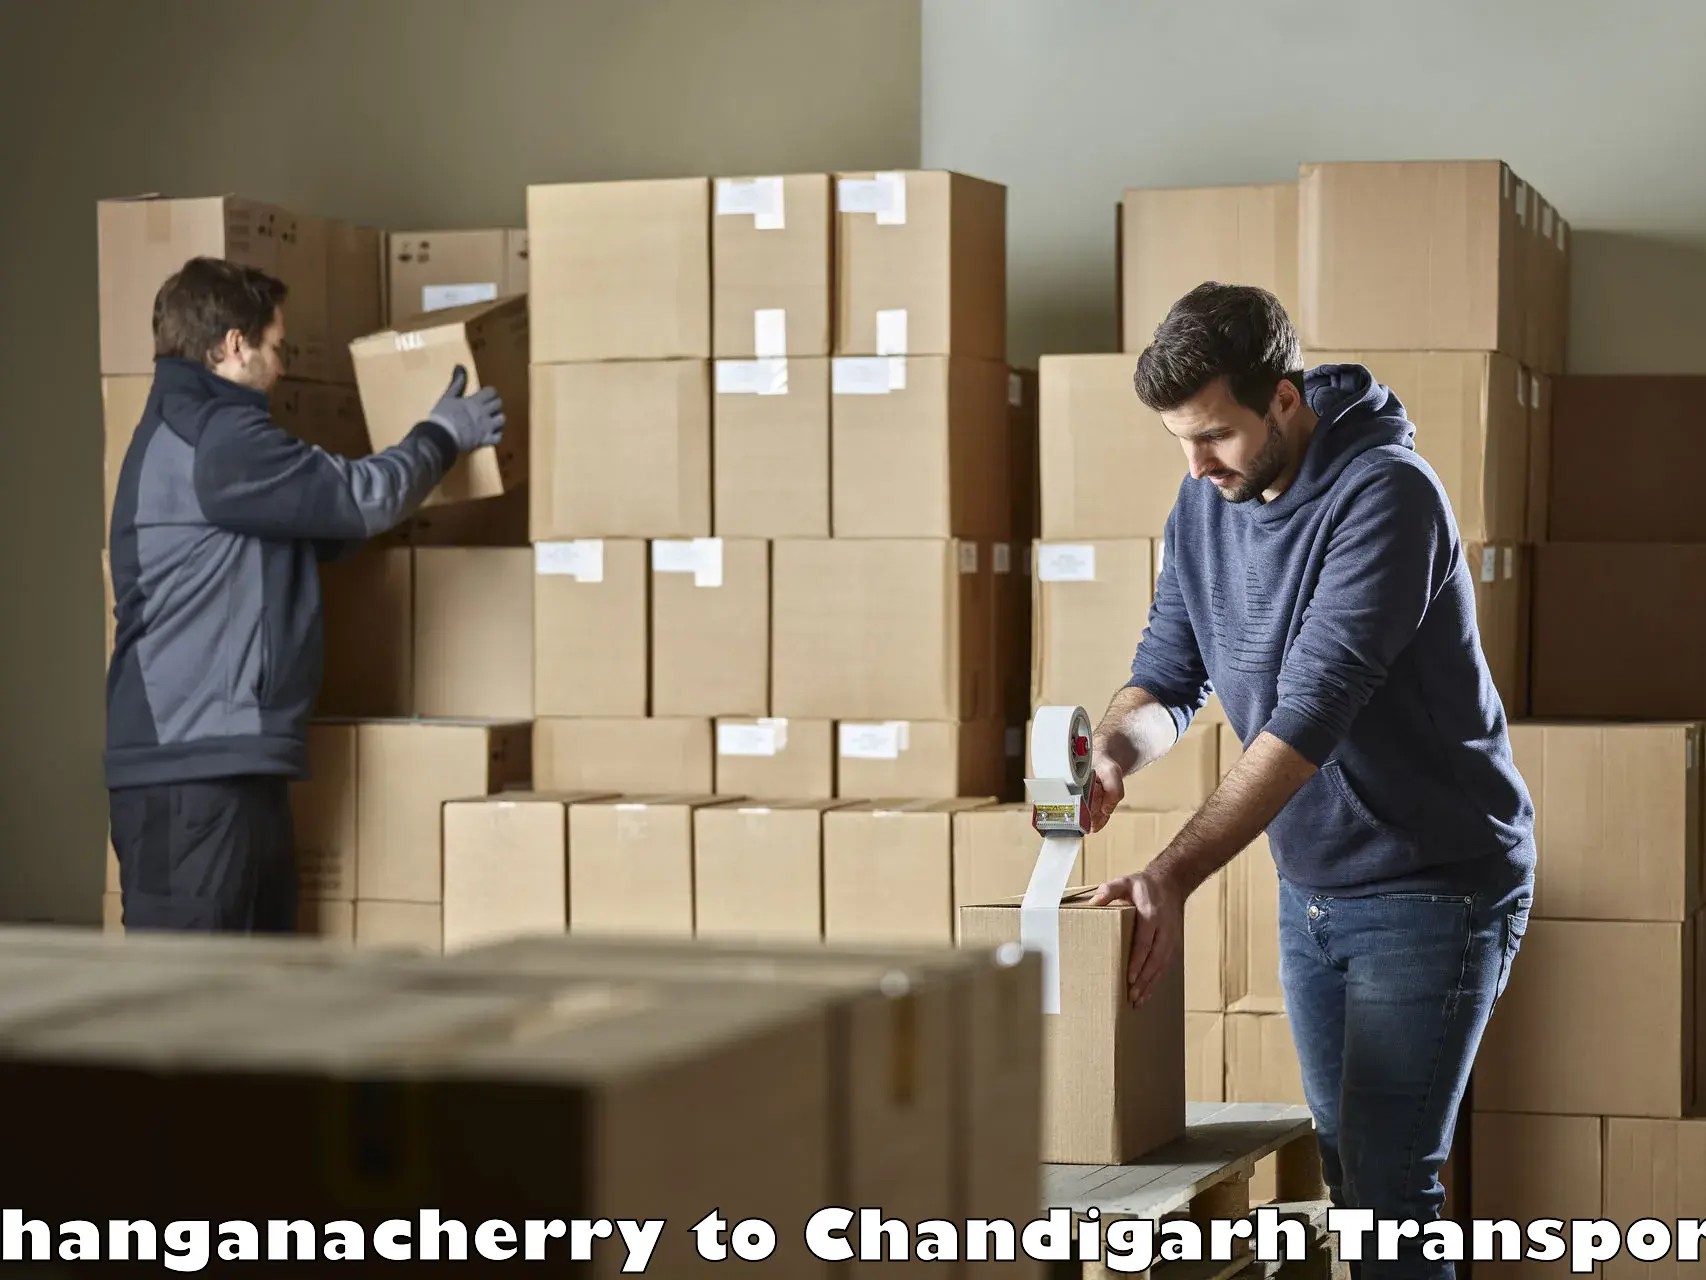 Daily transport service Changanacherry to Panjab University Chandigarh